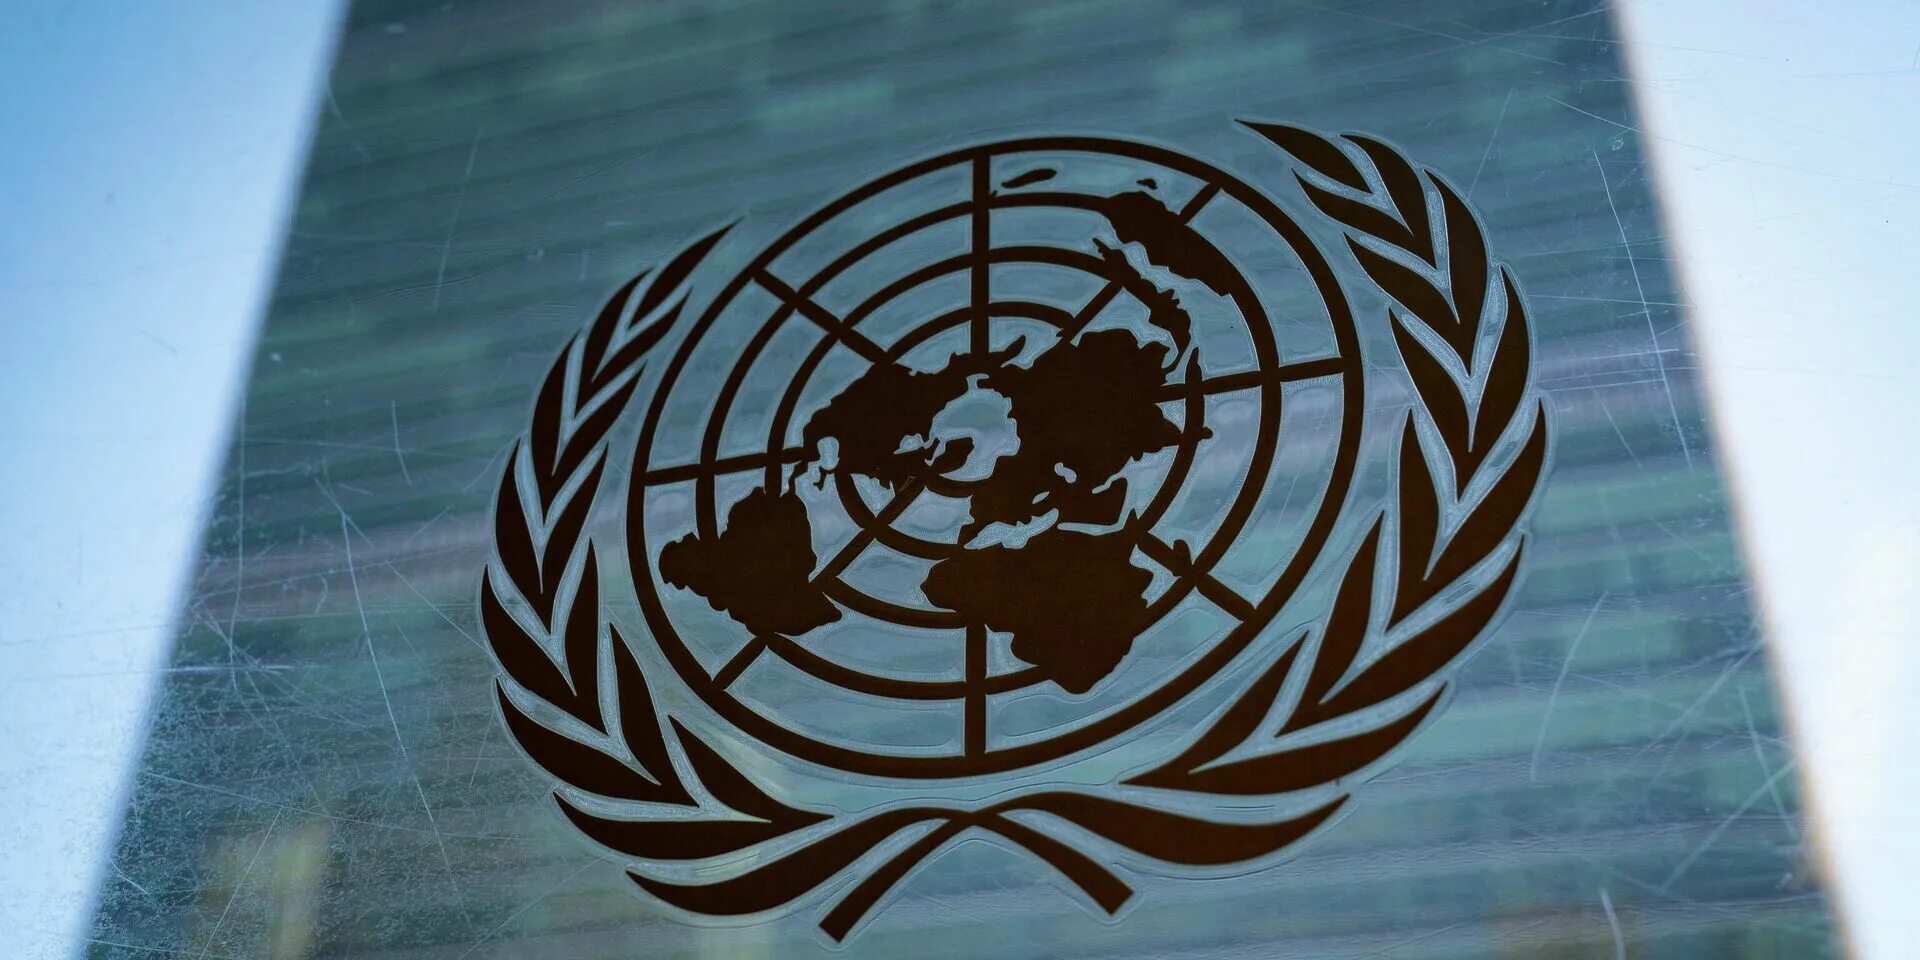 Зал Генеральной Ассамблеи ООН. Генеральная Ассамблея ООН 2022. Генассамблея ООН 2022. Зал заседания Генеральной Ассамблеи ООН. Организация объединенных народов